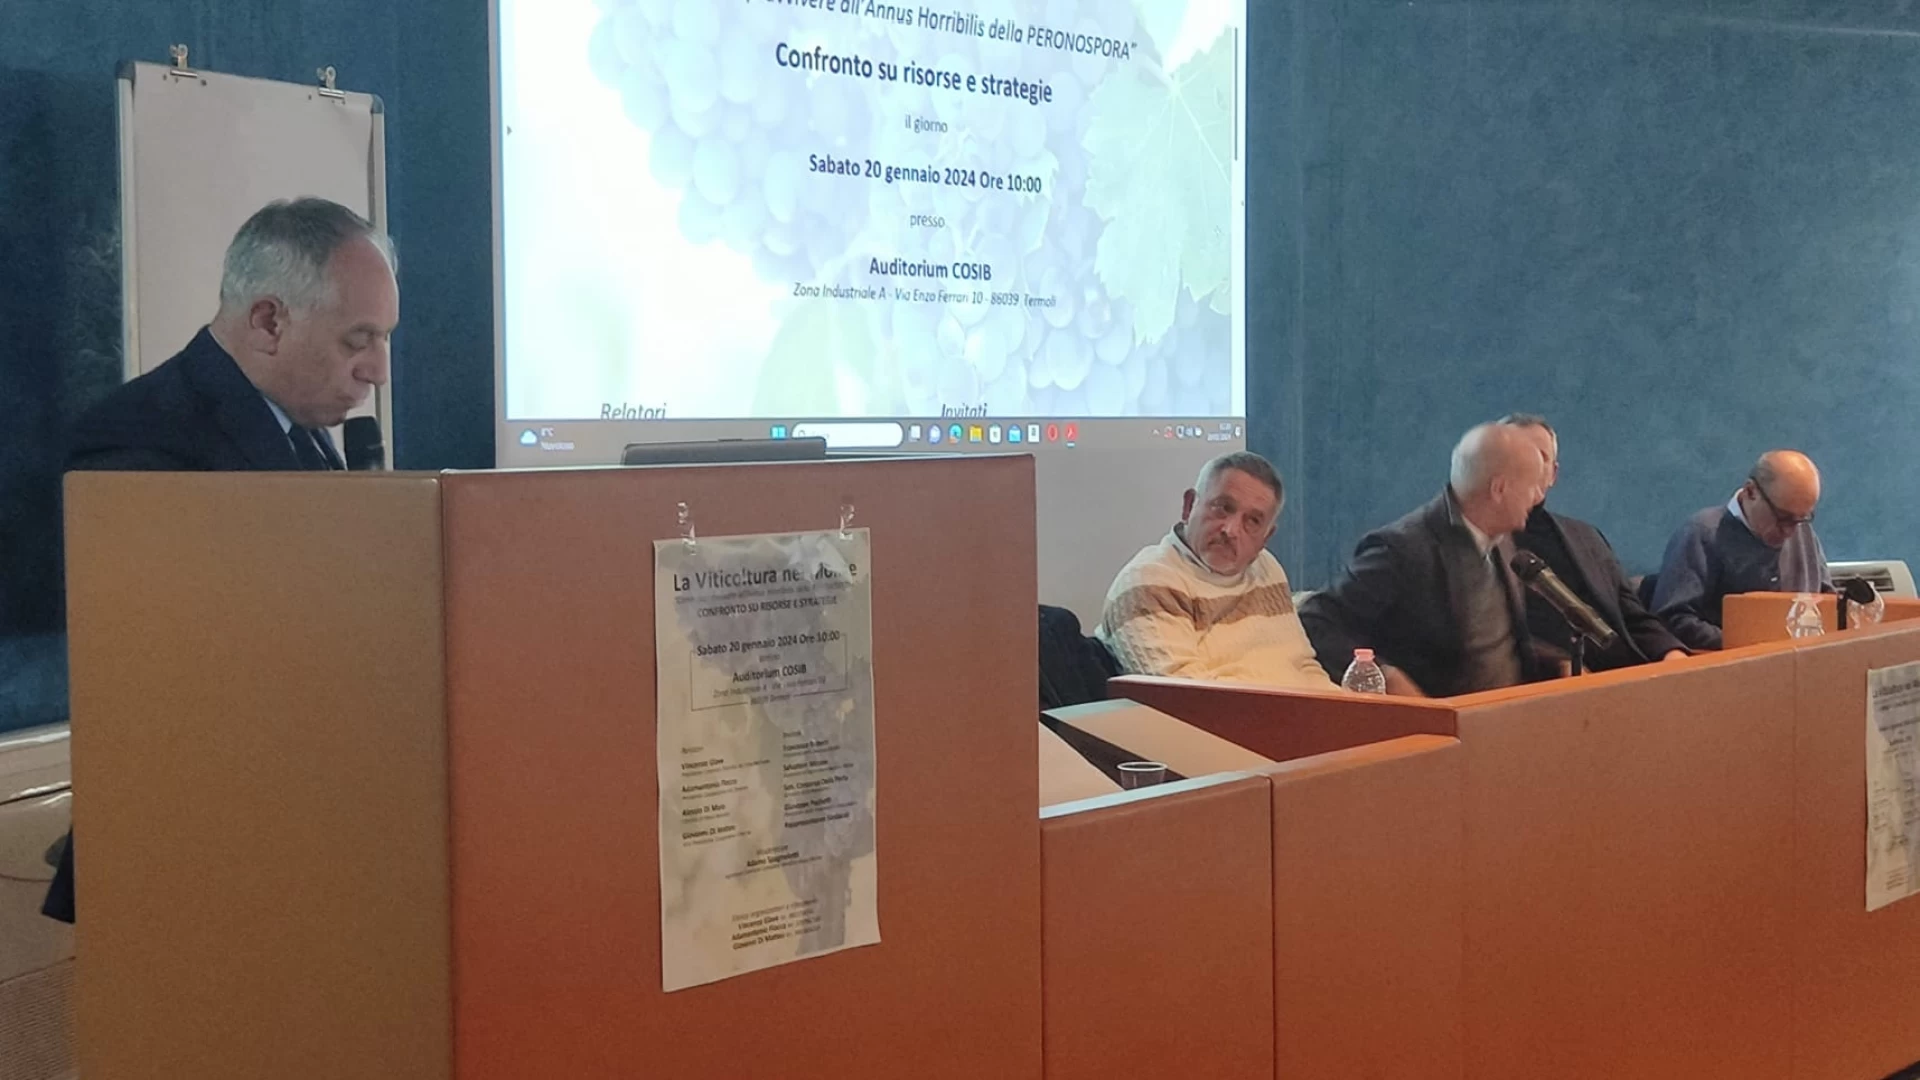 Peronospora, Sottosegretario Niro a convegno con operatori: "Danni ingenti, presto nuovo confronto per studiare soluzioni"